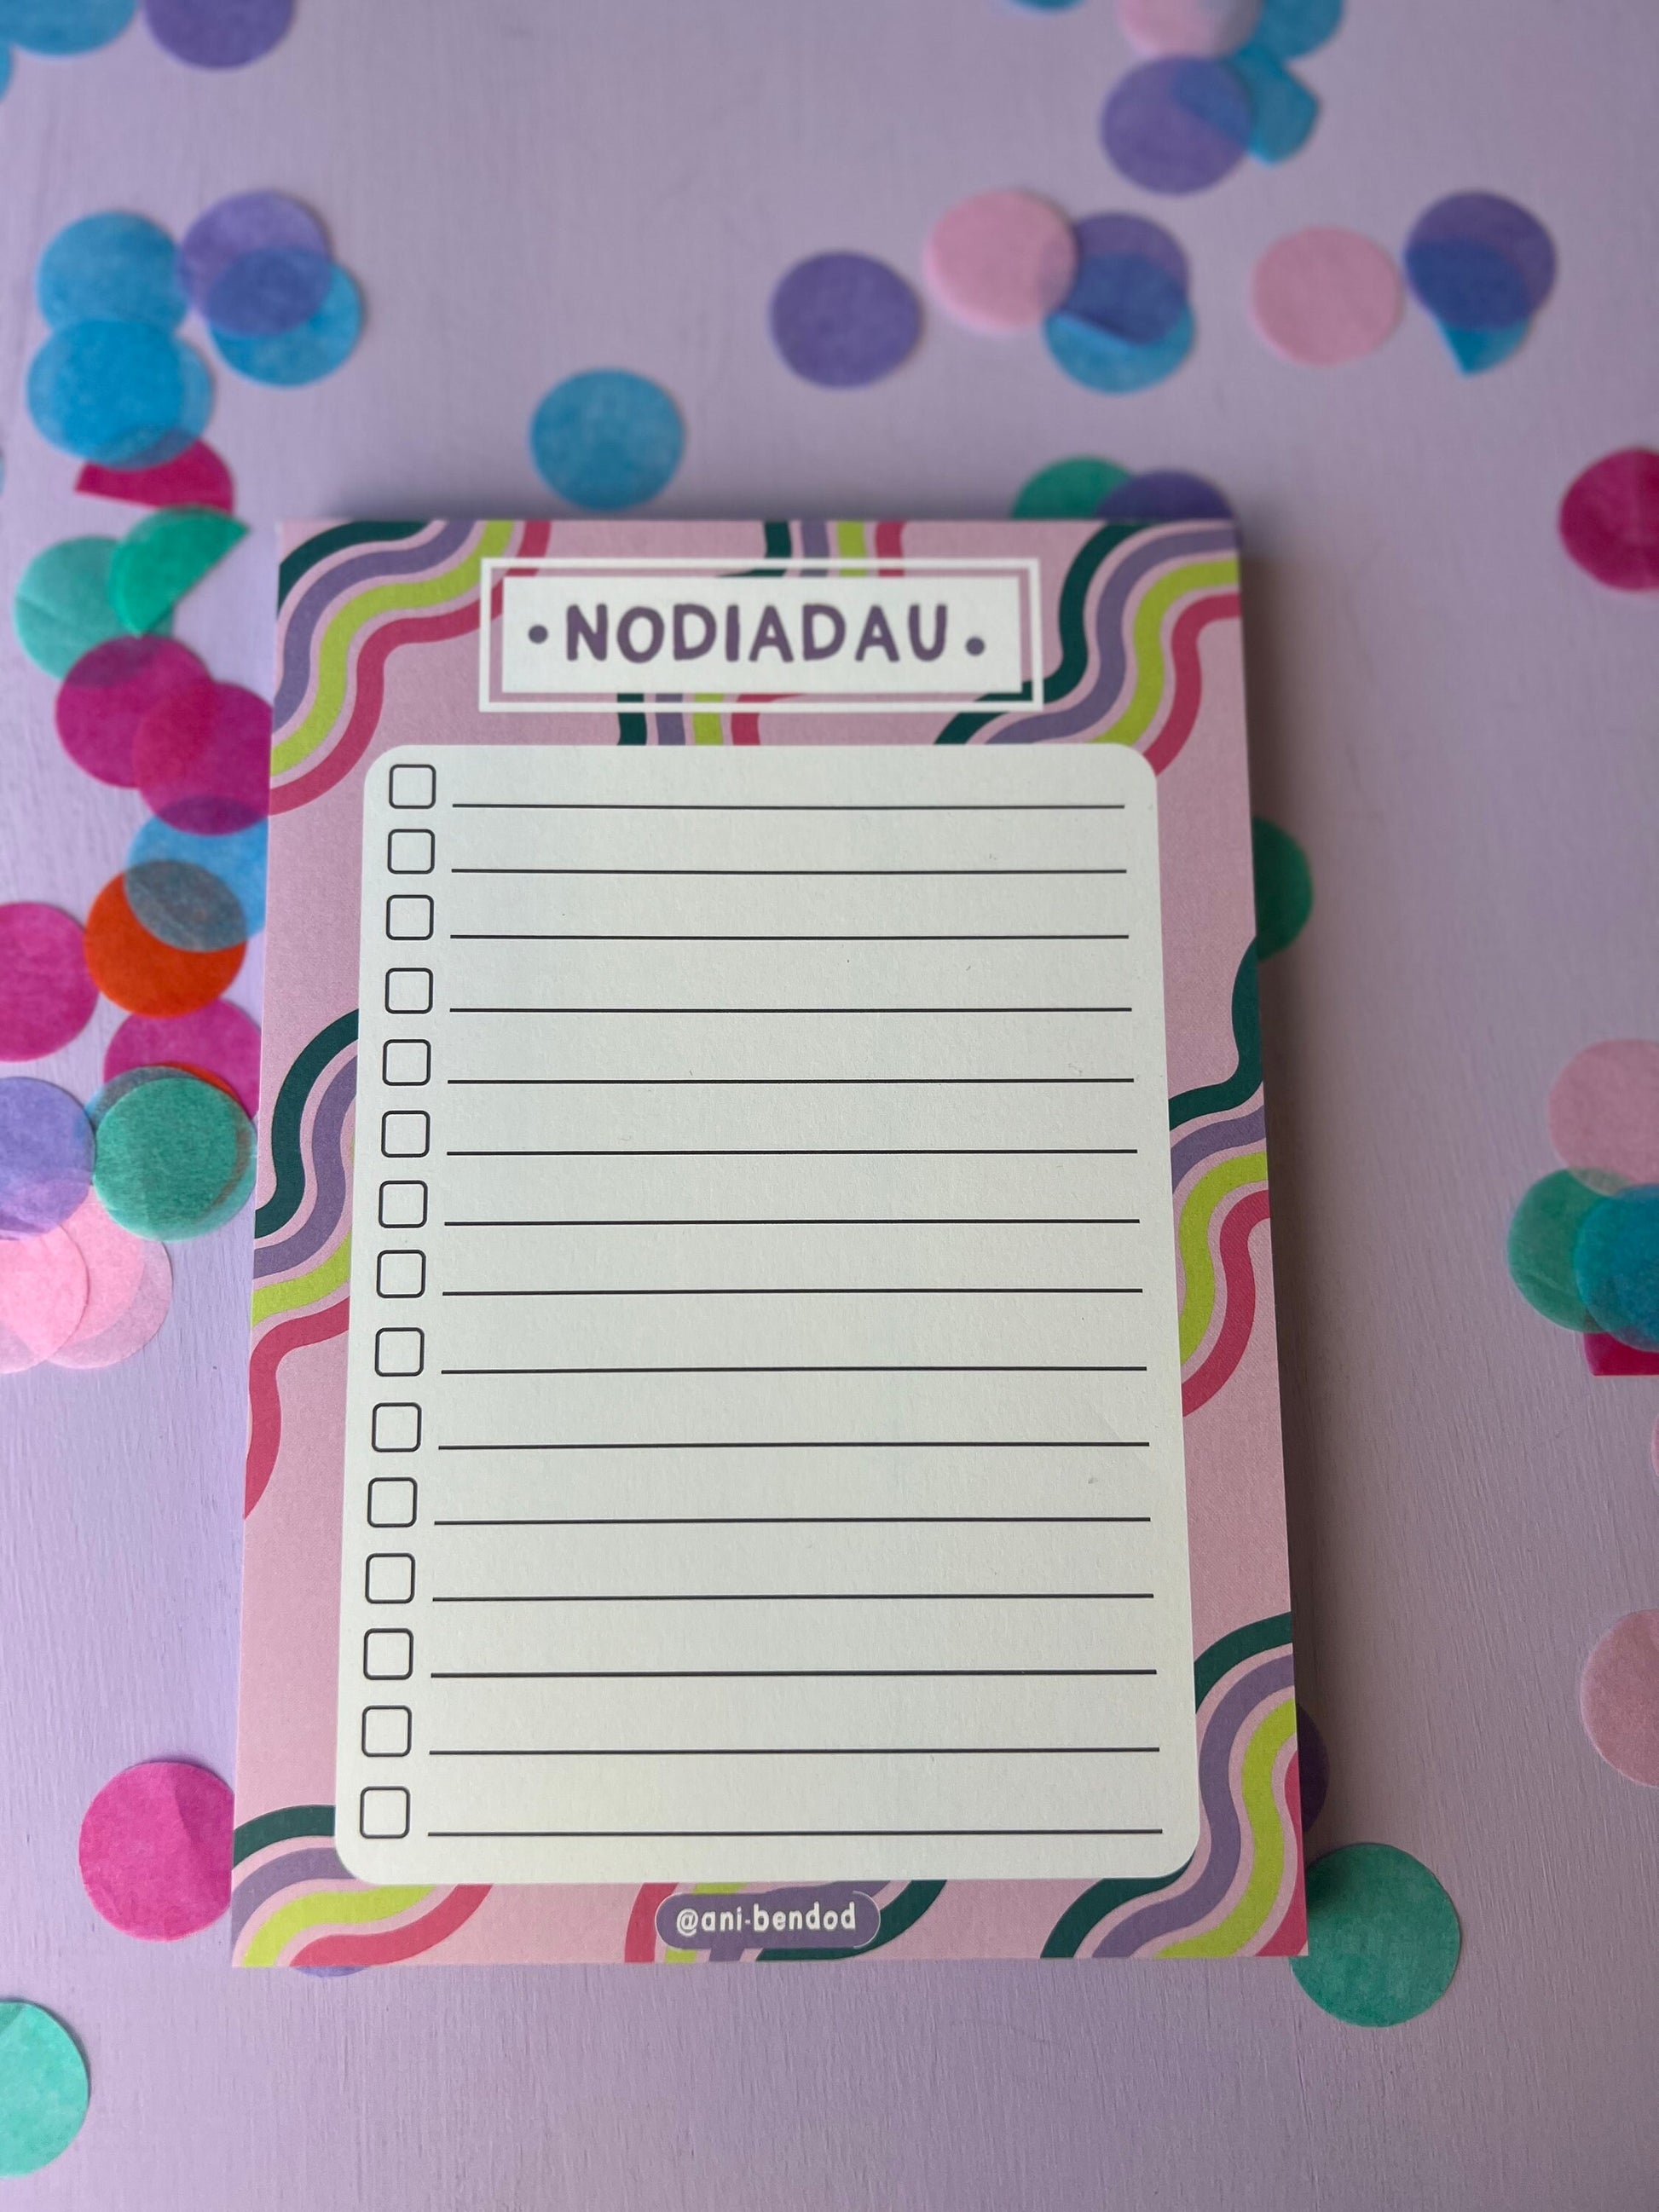 NEWYDD-NODIADAU (notes)- pad A5- ani-bendod